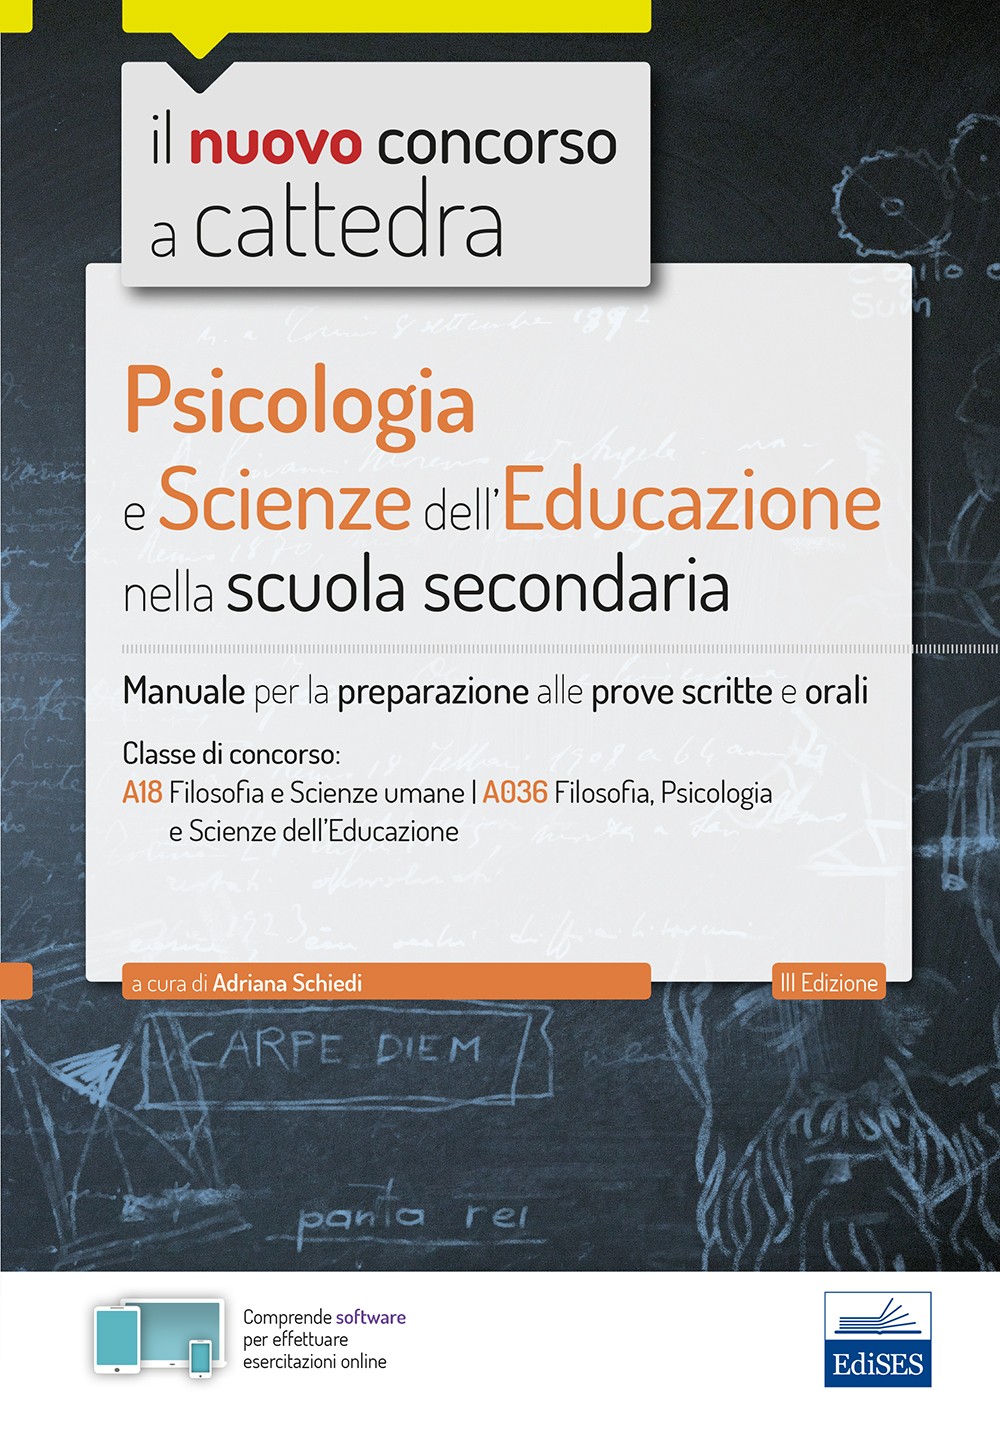 Psicologia e Scienze dell'educazione nella scuola secondaria - Librerie.coop